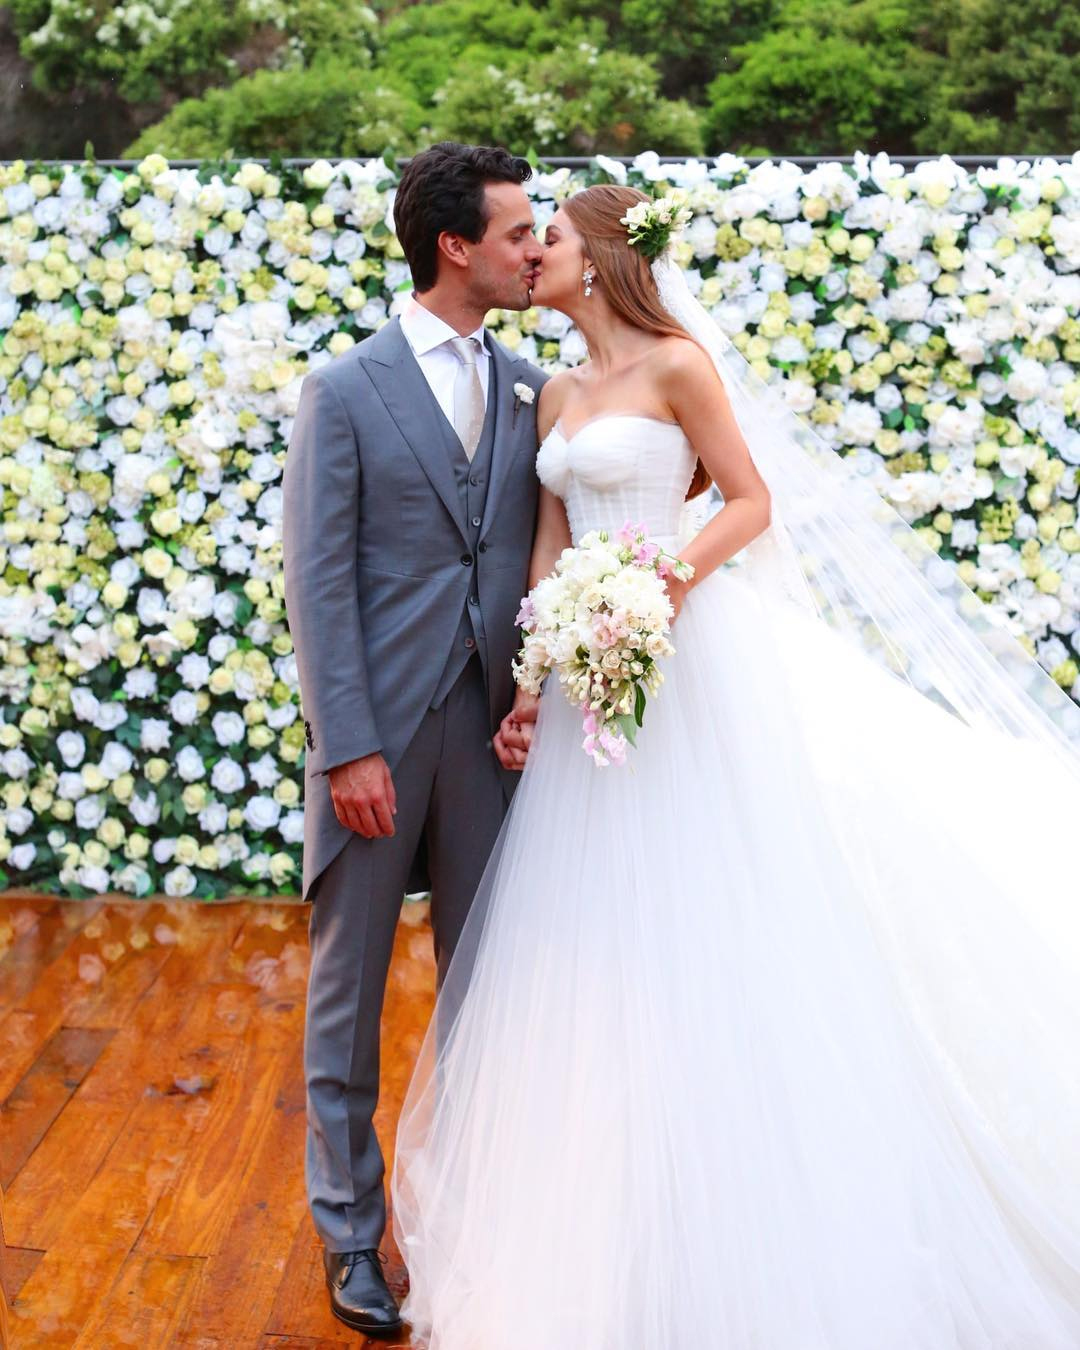 A atriz brasileira Marina Ruy Barbosa casou com Alexandre (Xande) Sarnis Negrão em outubro, protagonizando um dos casamentos do ano.